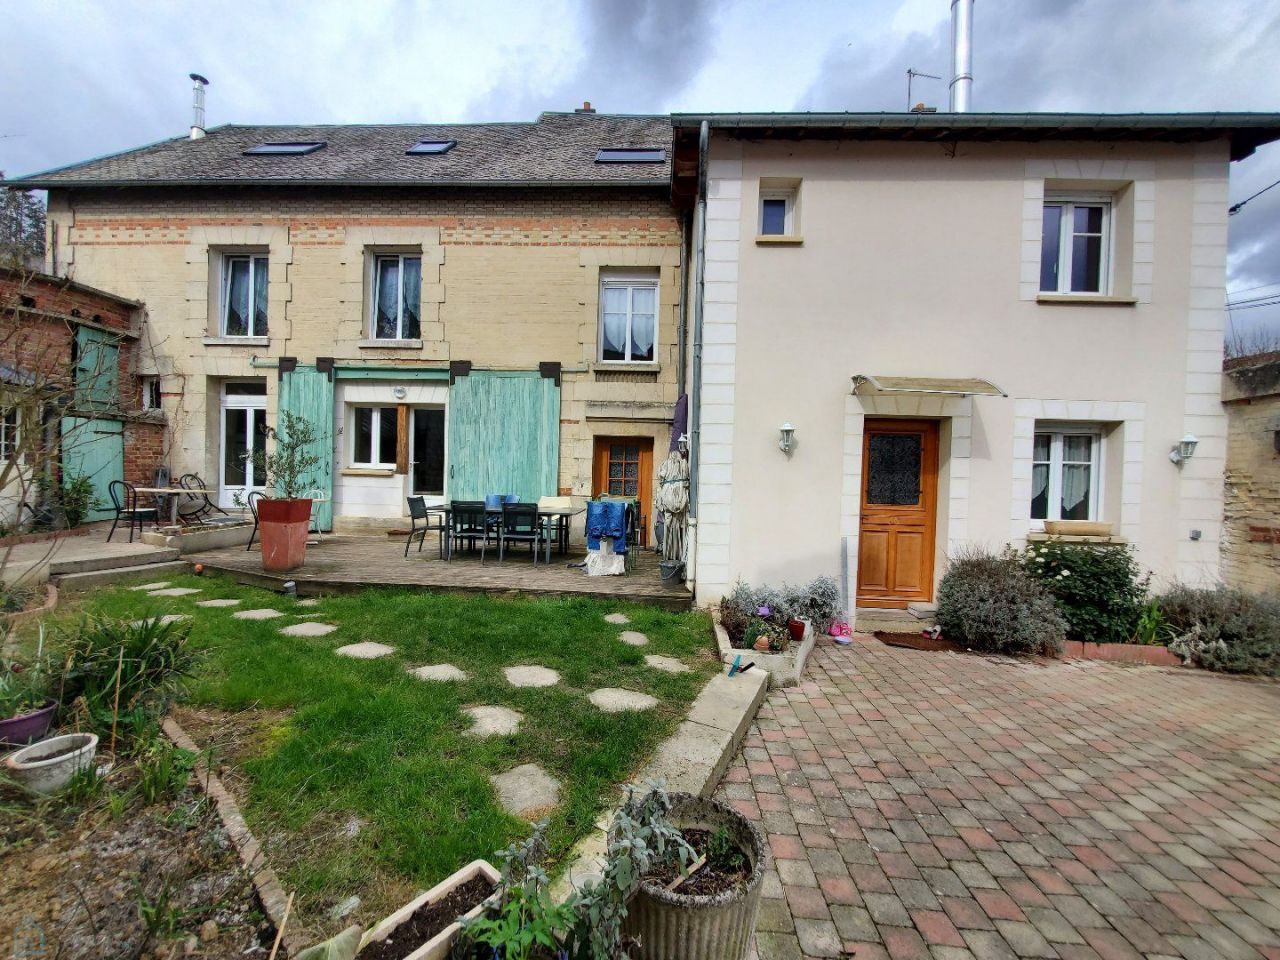 House in Centre-Val de Loire, France - picture 1